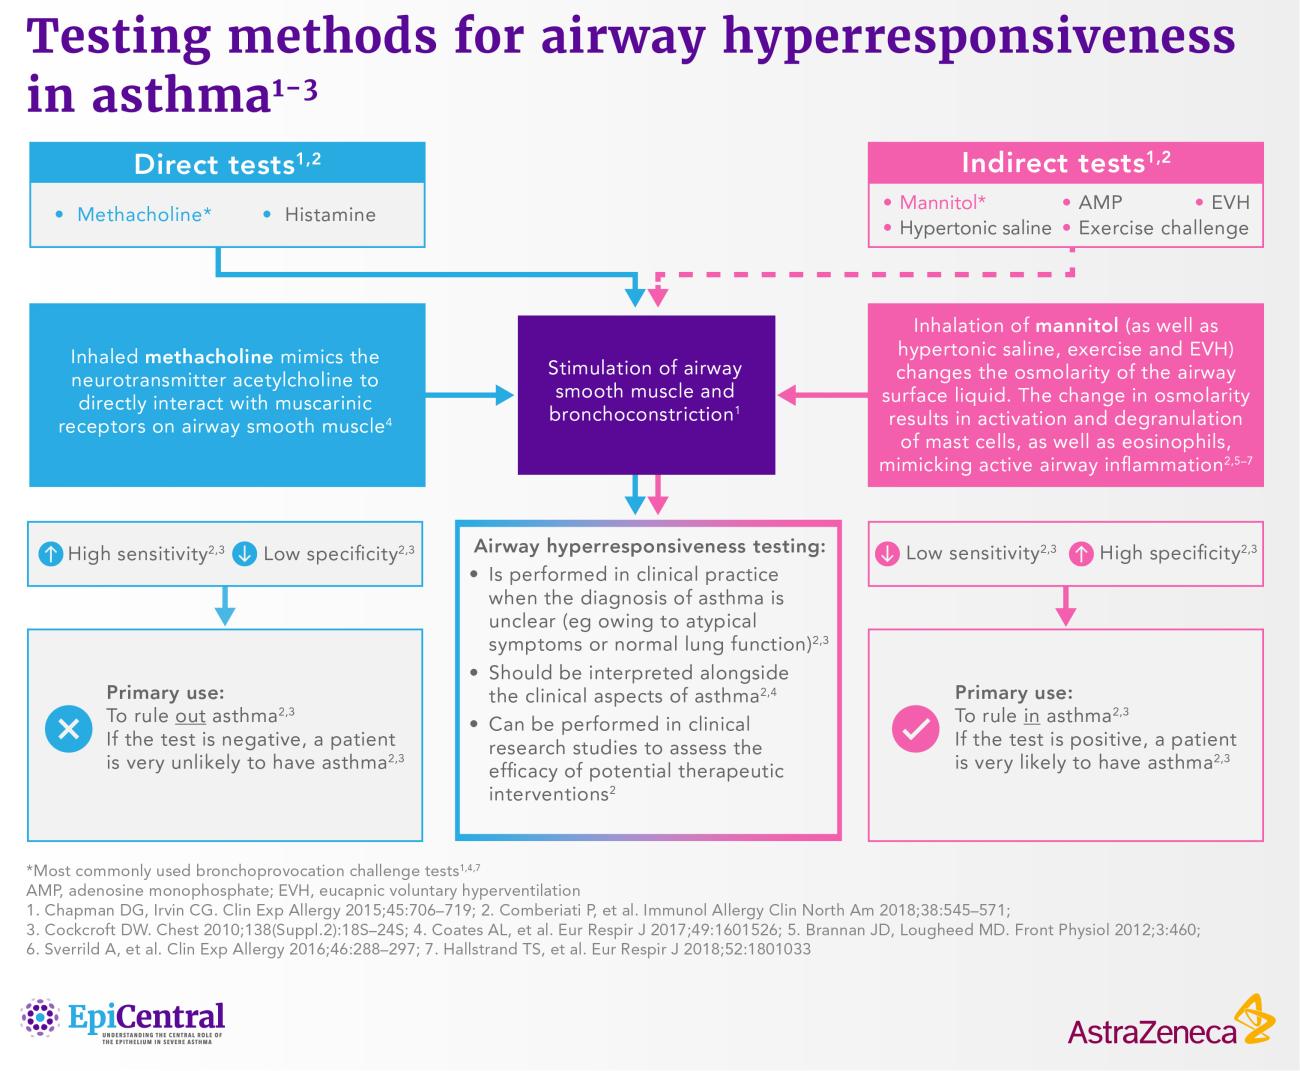 Testing methods for airway hyperresponsiveness in asthma